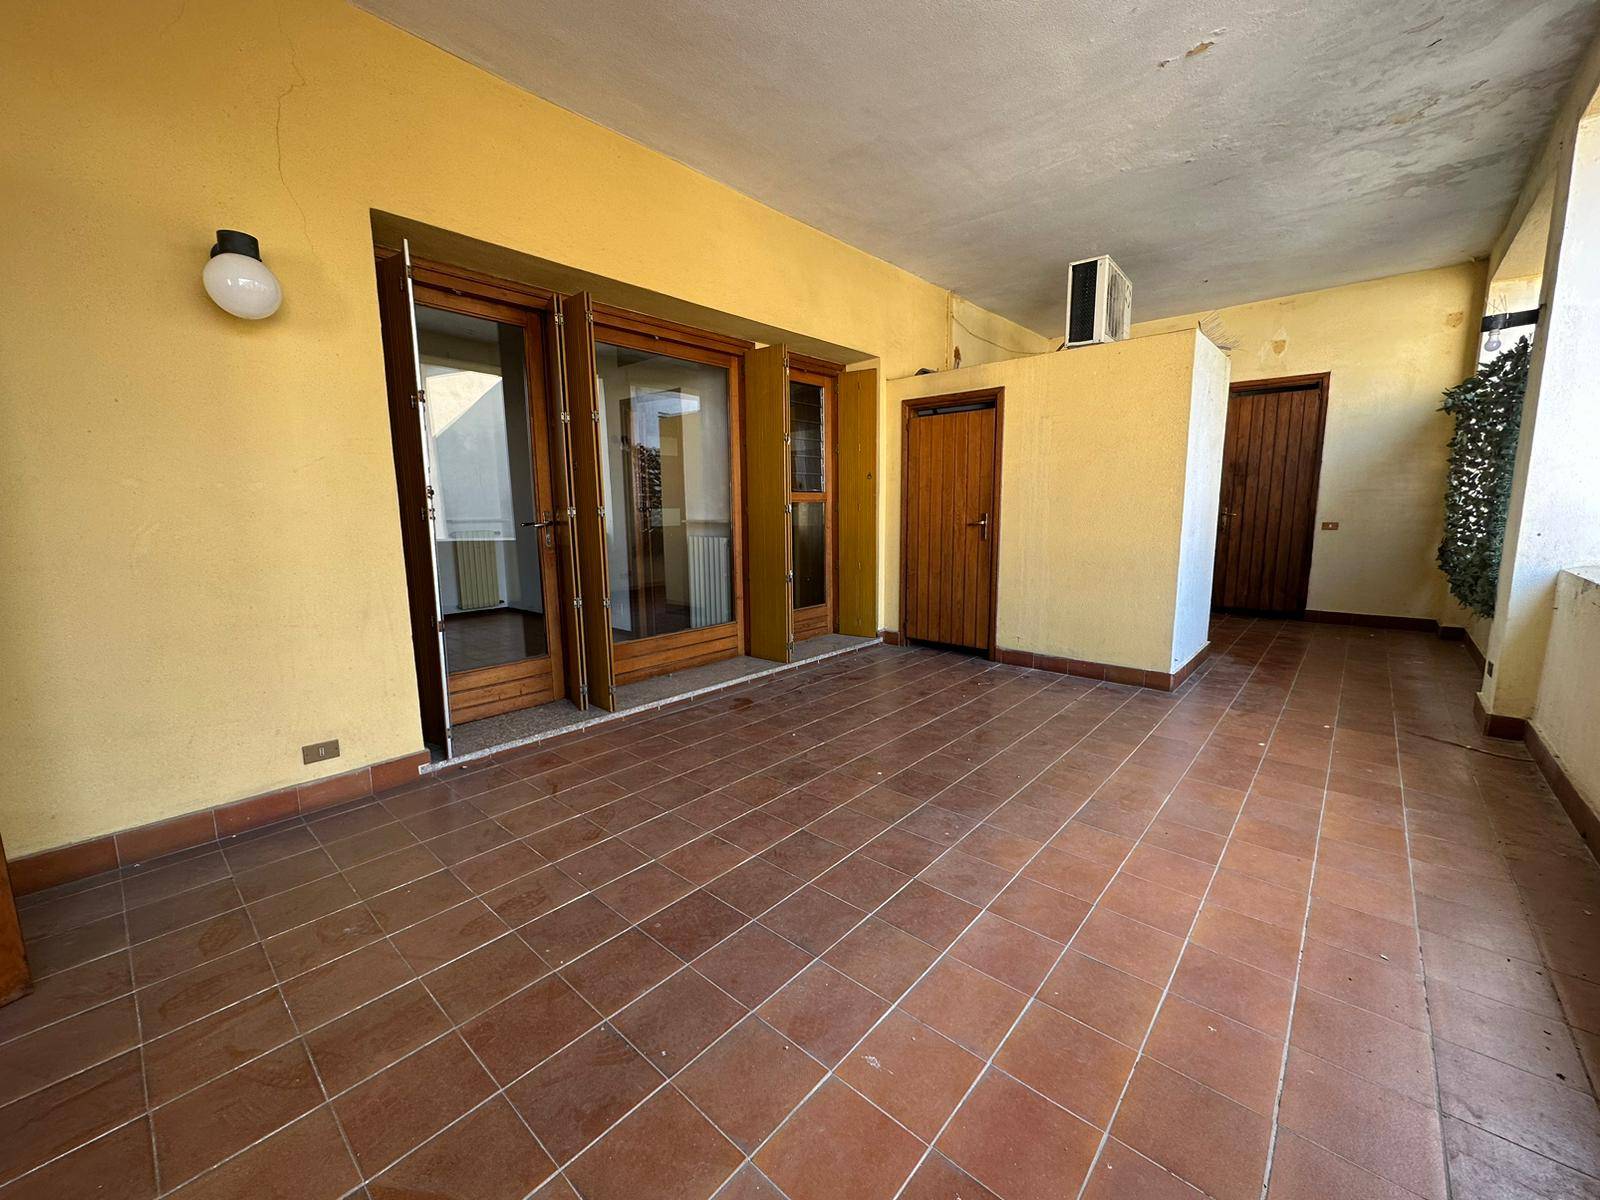 Appartamento in affitto a Oleggio, 3 locali, prezzo € 500 | CambioCasa.it